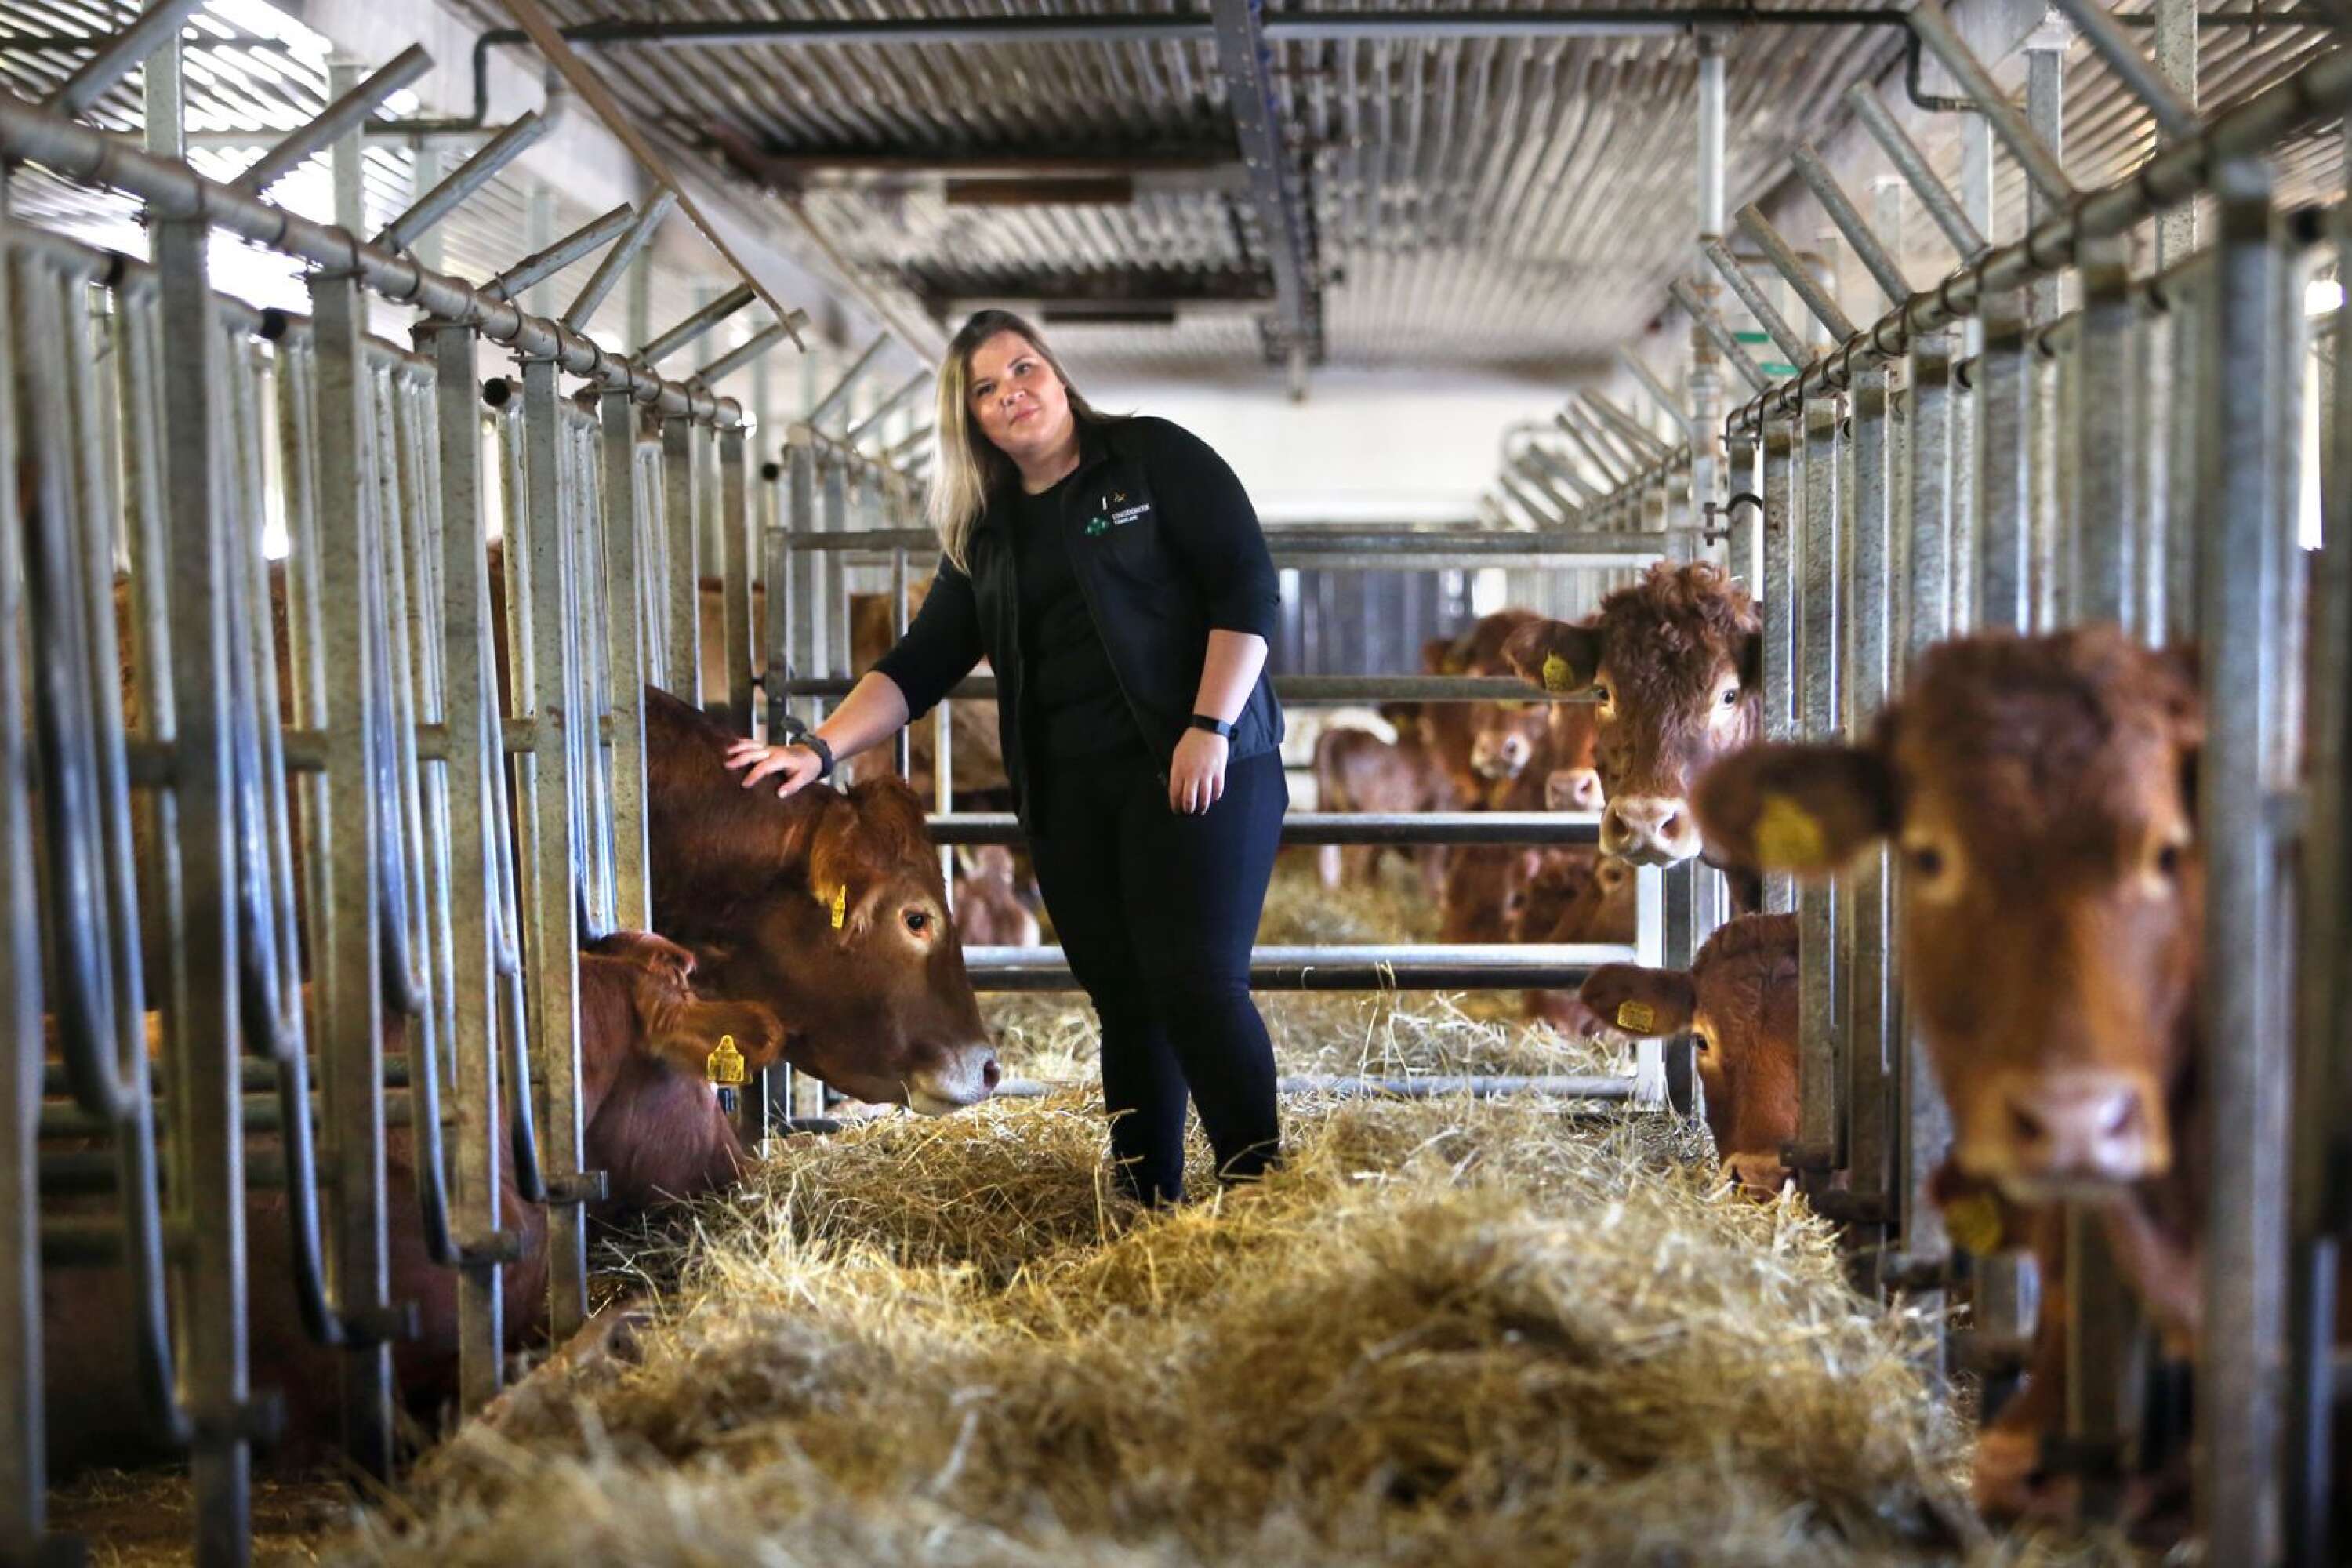 ”Att jobba inom lantbruk är en livsstil. Det är inte många som orkar bli väckta en lördagsnatt för att ens kossa springer ute”, säger Jonna Didriksson.